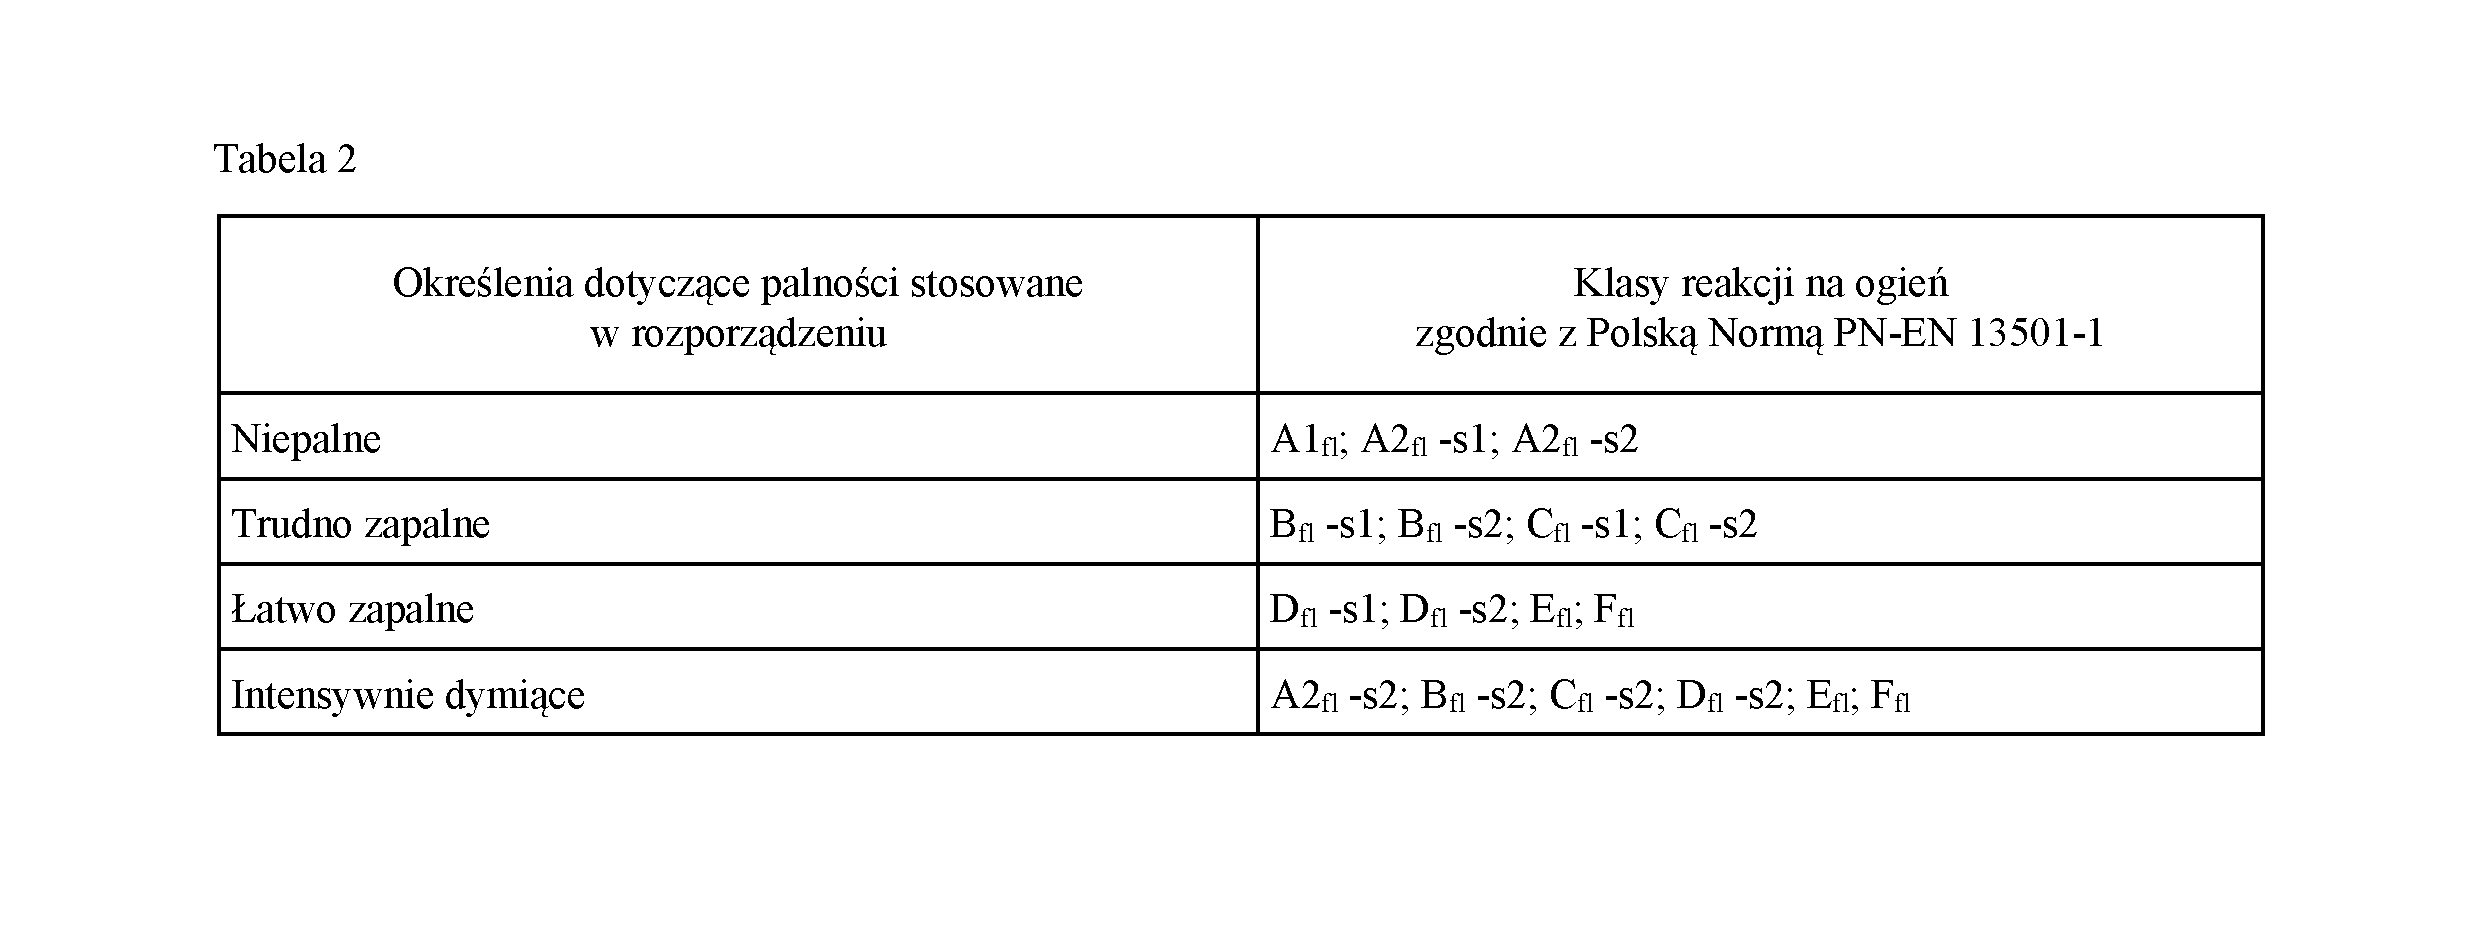 Stosowanym w rozporządzeniu określeniom: niepalny, niezapalny, trudno zapalny, intensywnie dymiący dotyczącym
posadzek (w tym wykładzin podłogowych) odpowiadają klasy reakcji na ogień, zgodnie z Polską Normą PN-EN 13501-1, podane w kolumnie 2
tabeli 2.